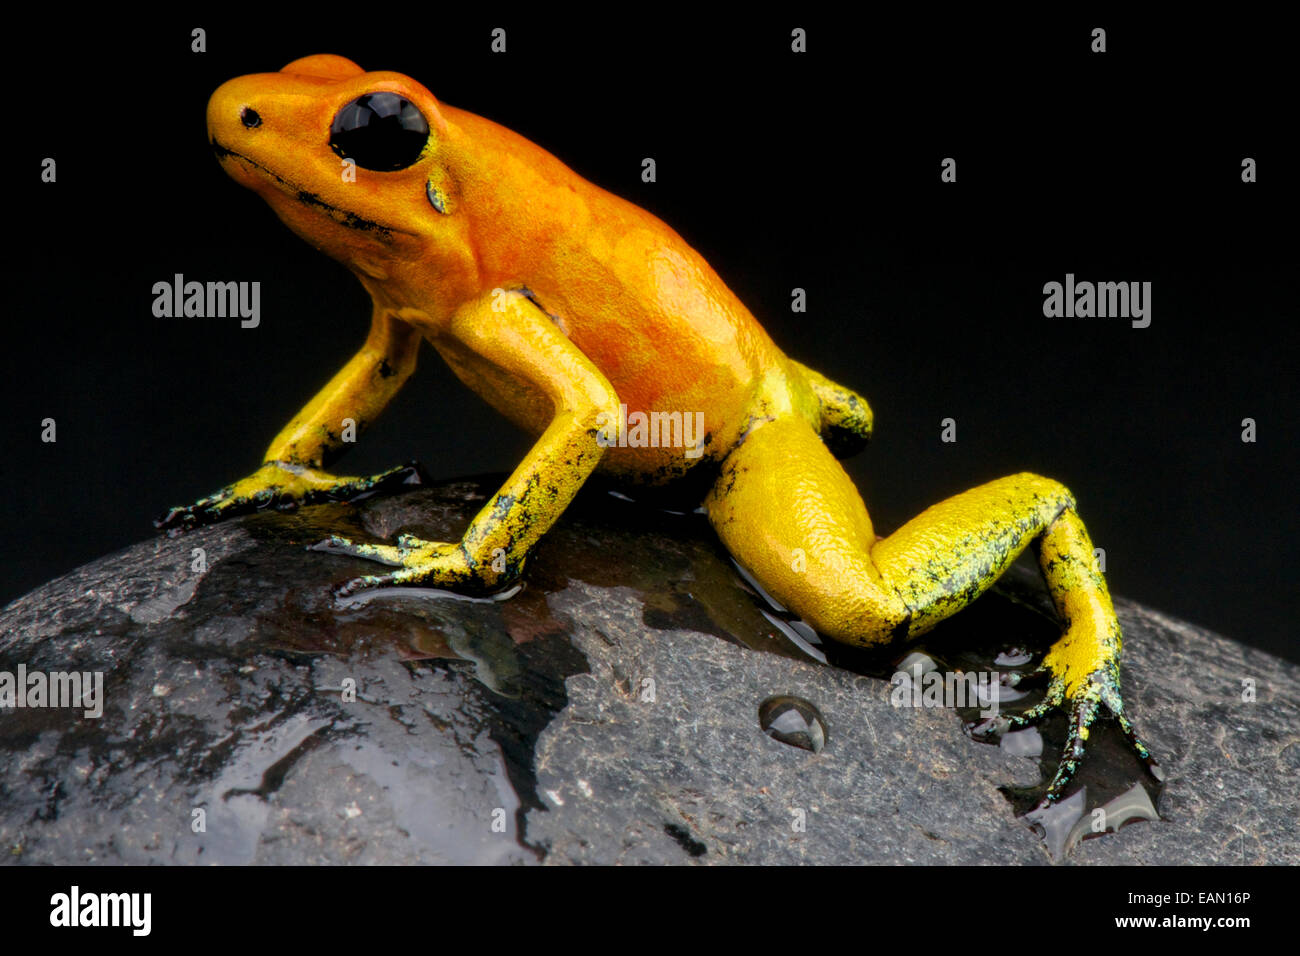 Golden dart frog / Phyllobates terribilis Stock Photo